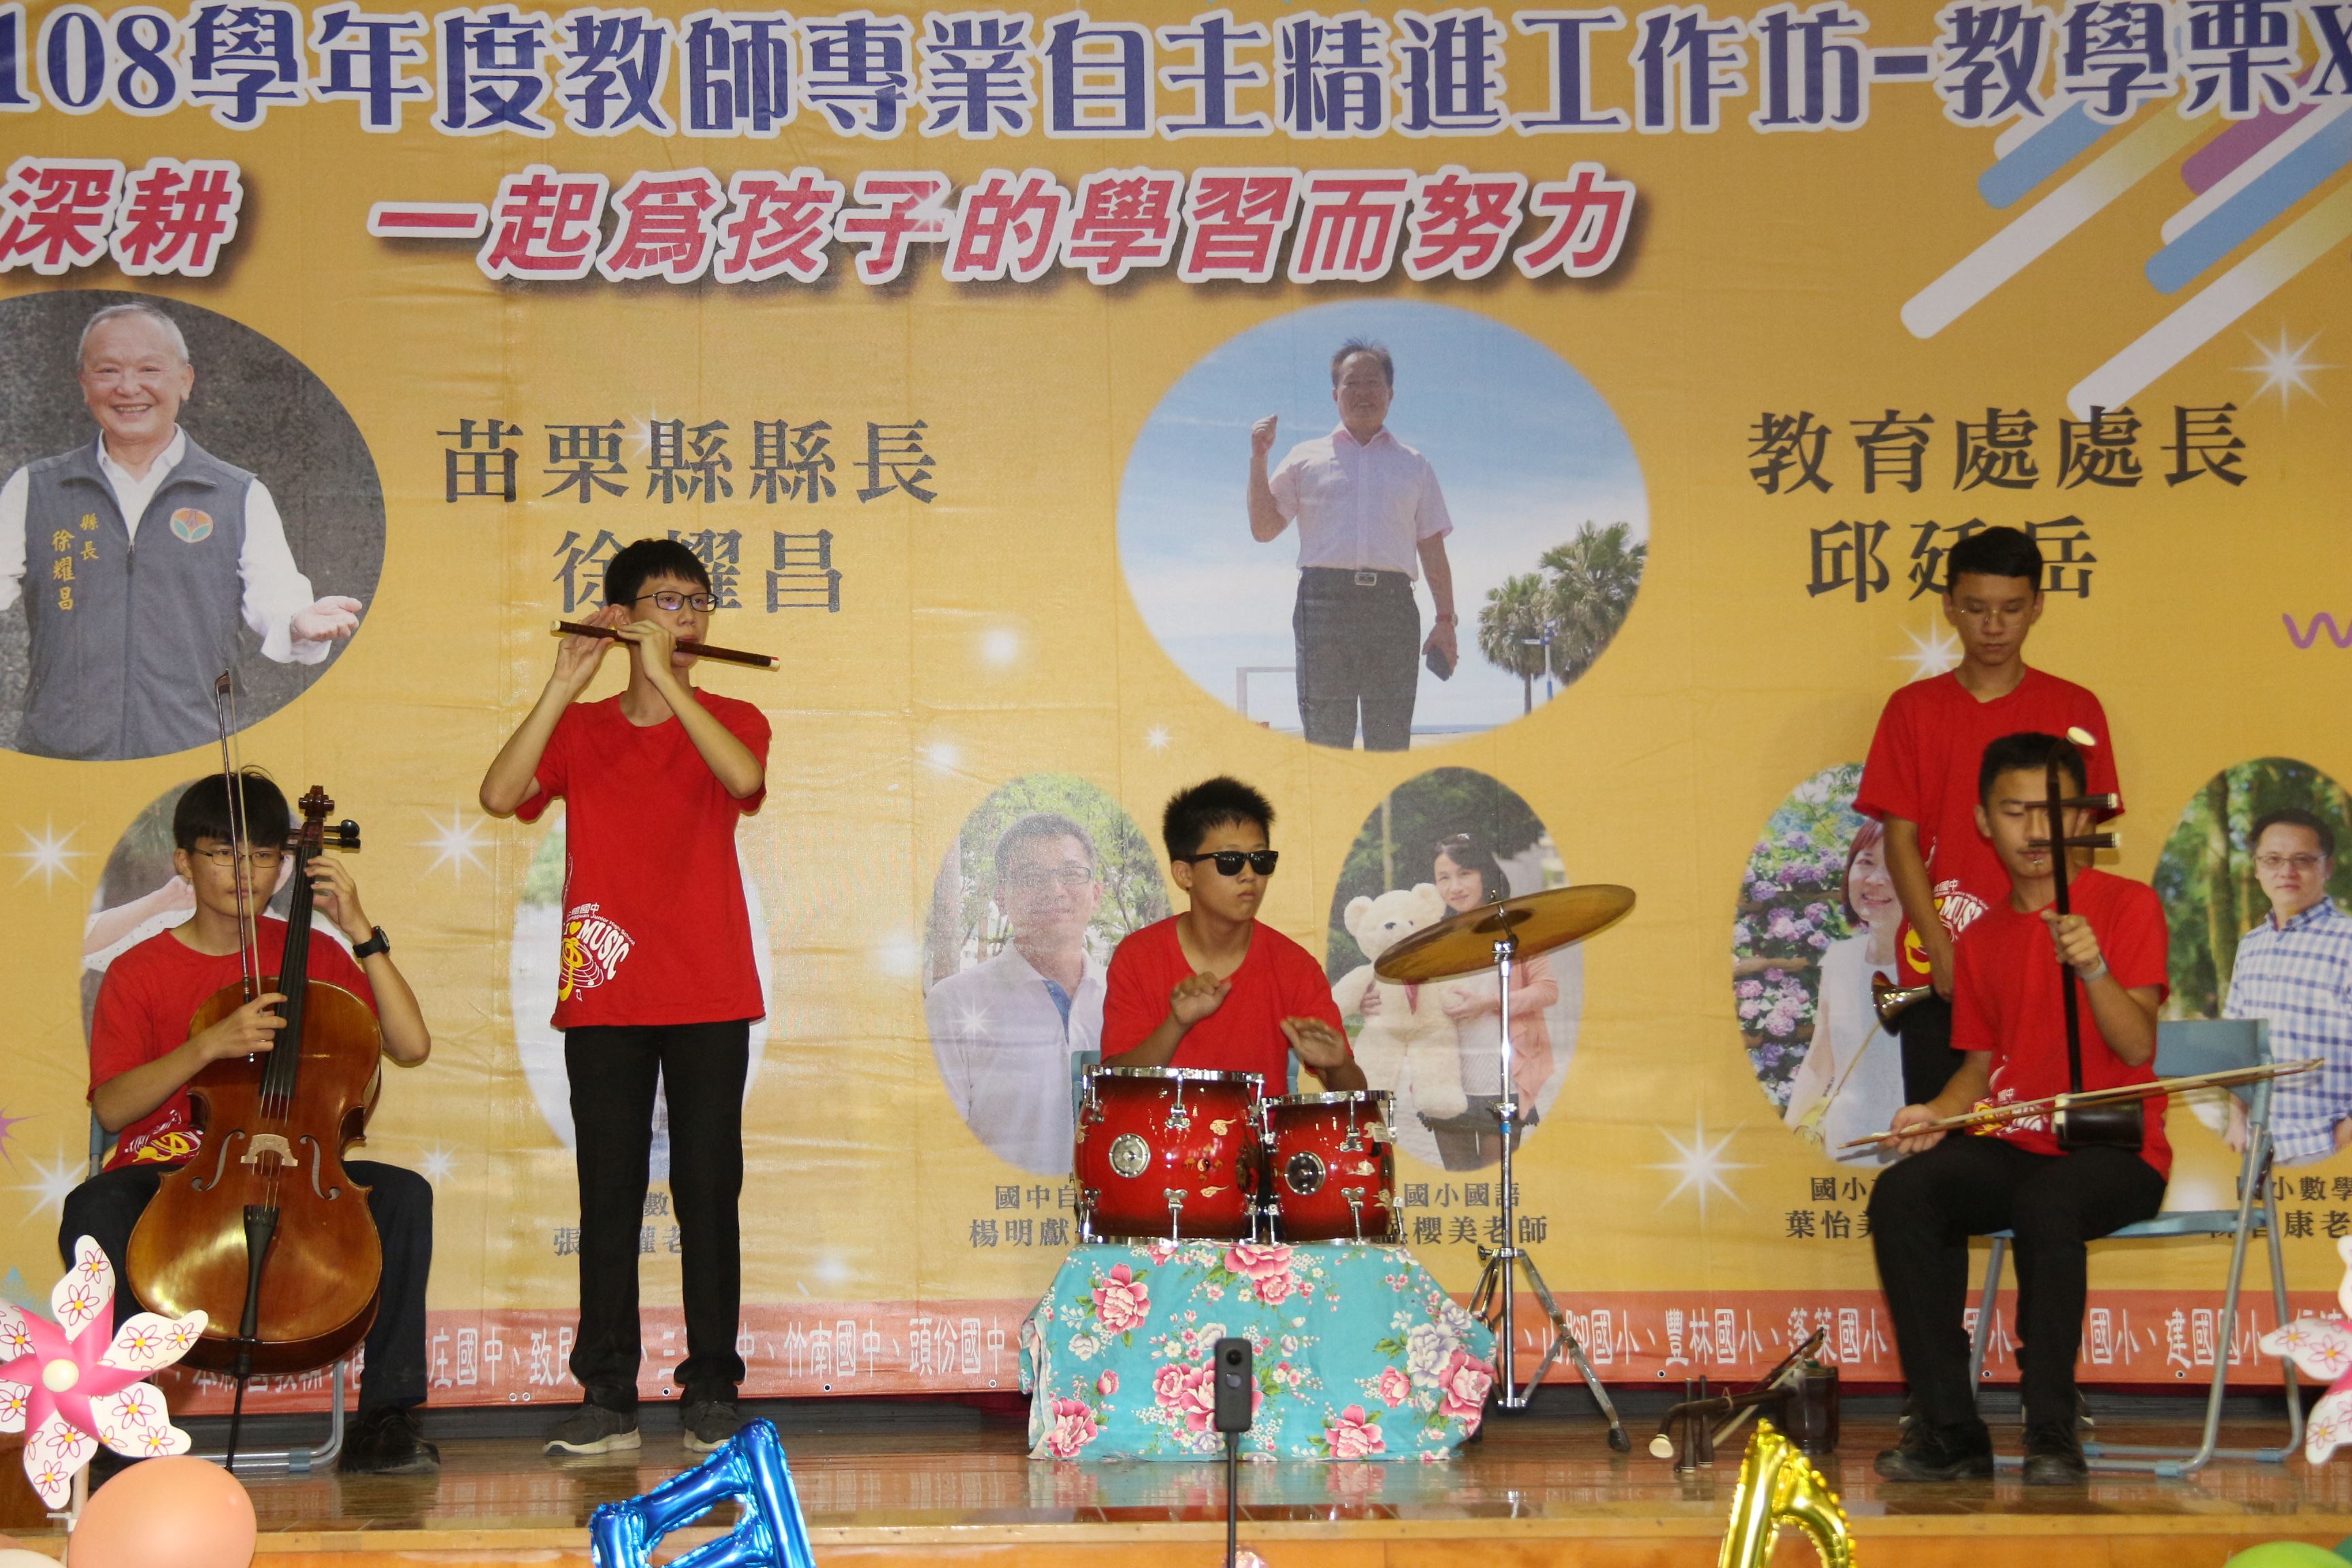 媒-3 公館國中的學生為活動表演開場IMG_6029.JPG